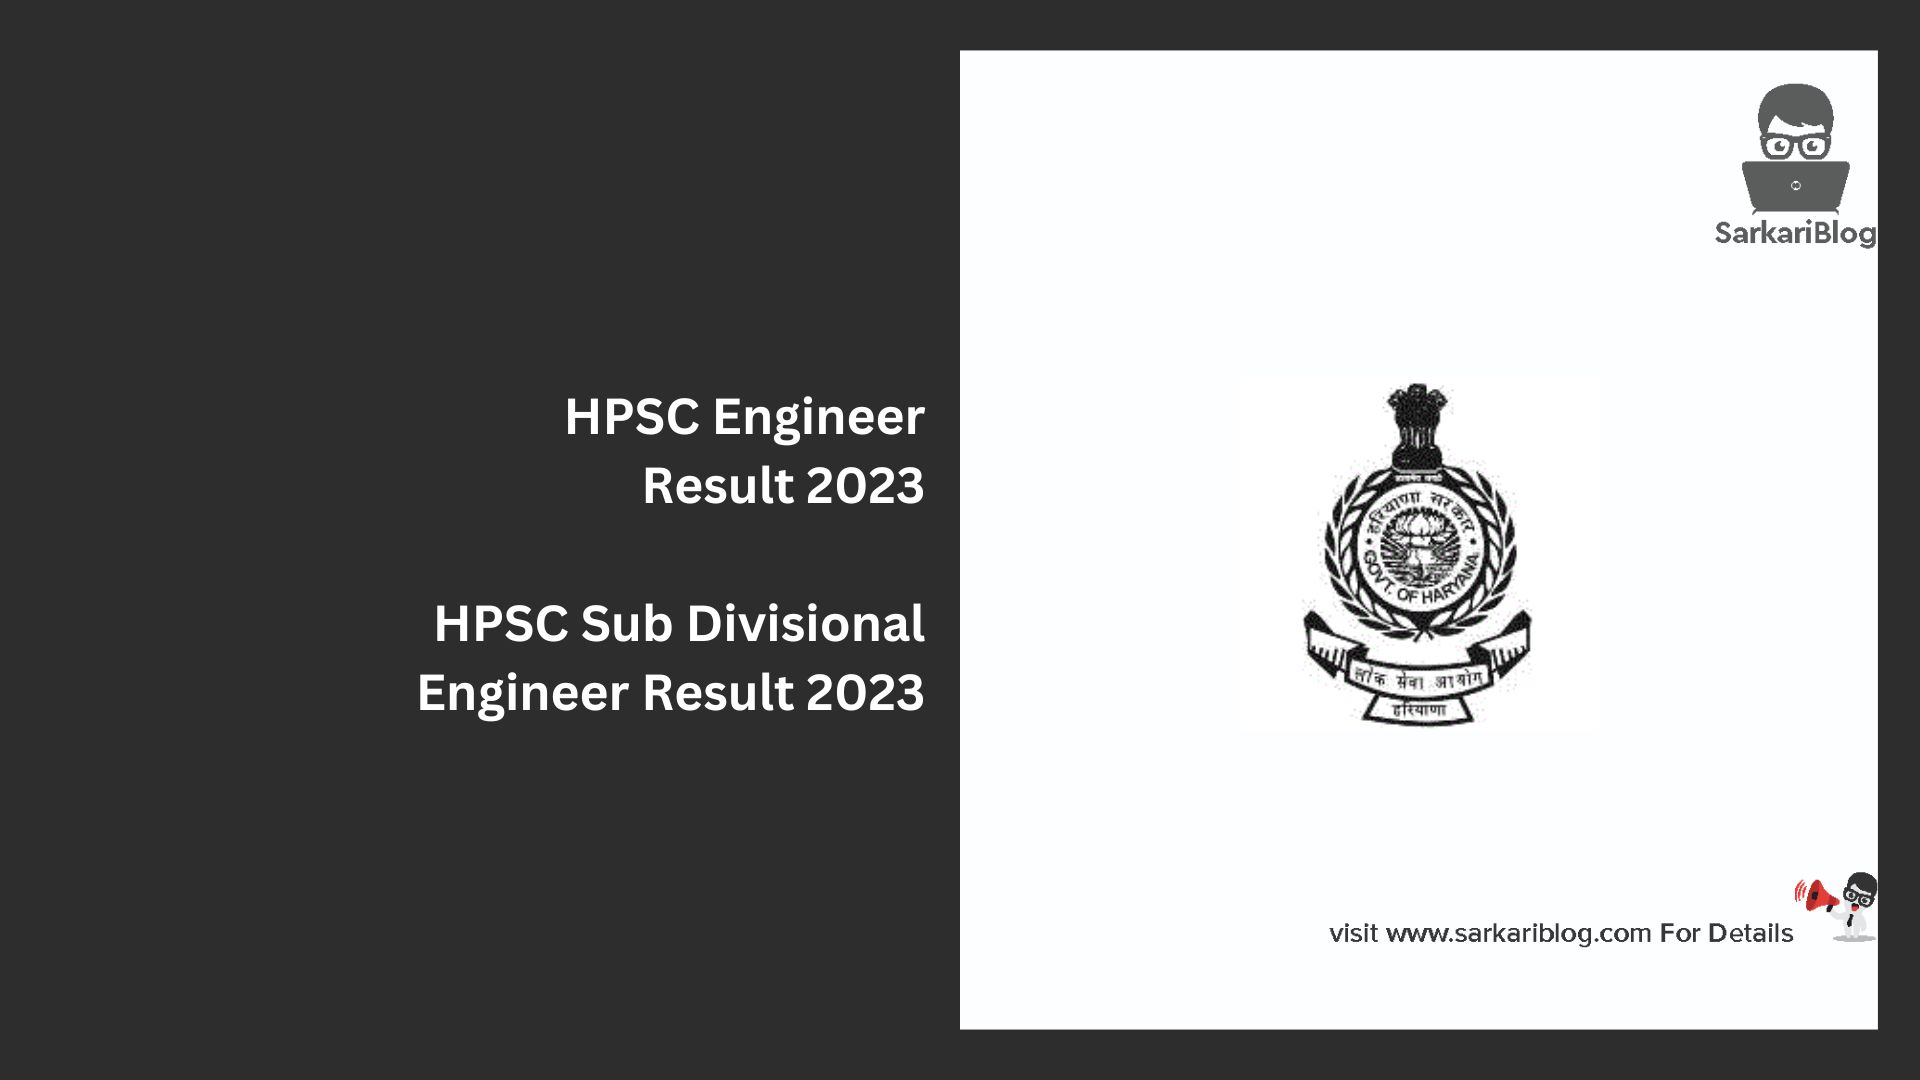 HPSC Engineer Result 2023